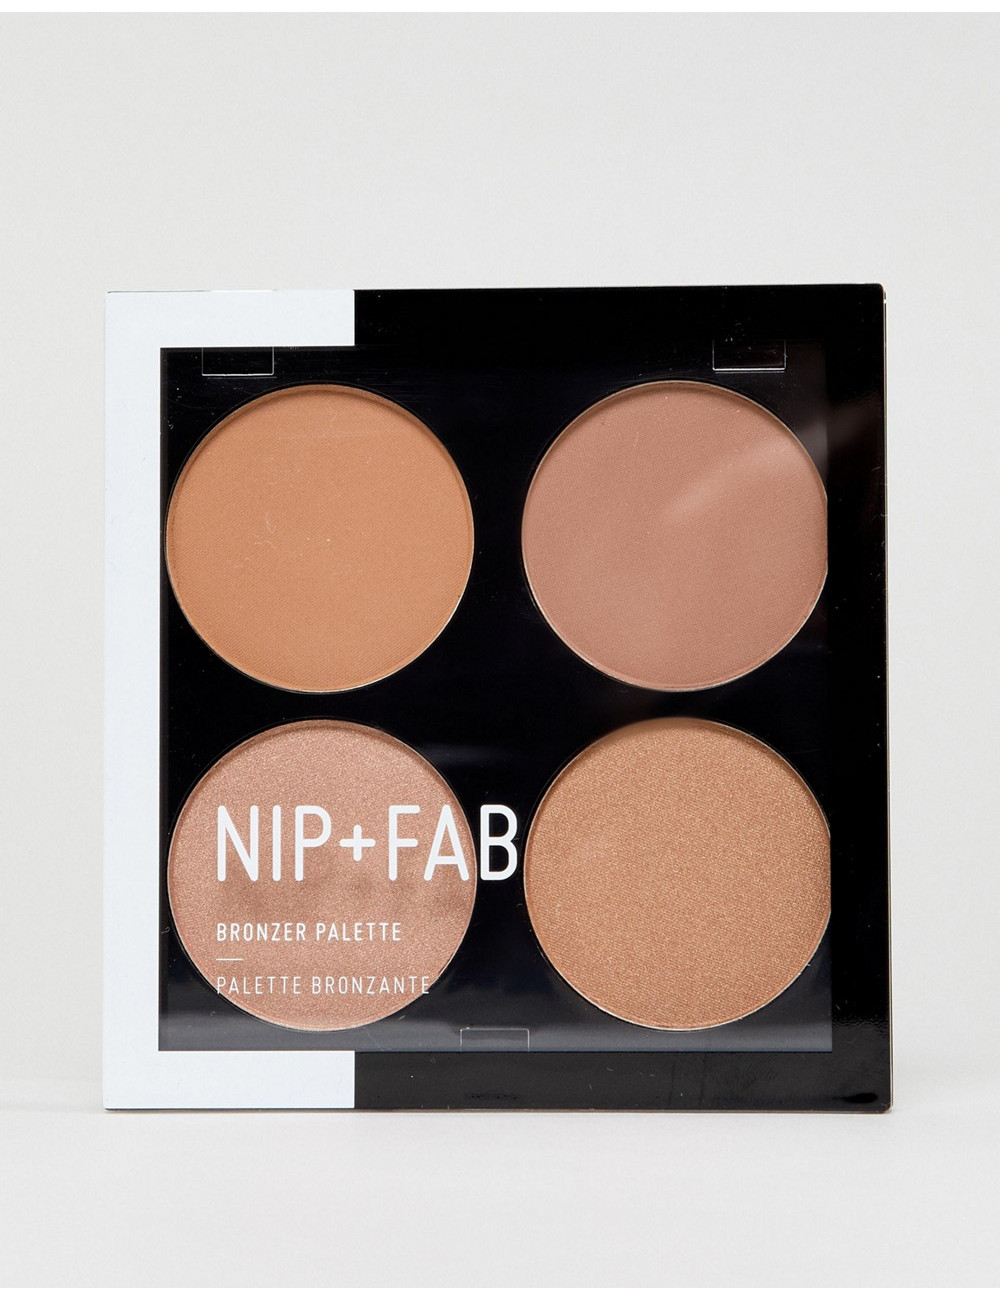 NIP+FAB Bronzer Palette